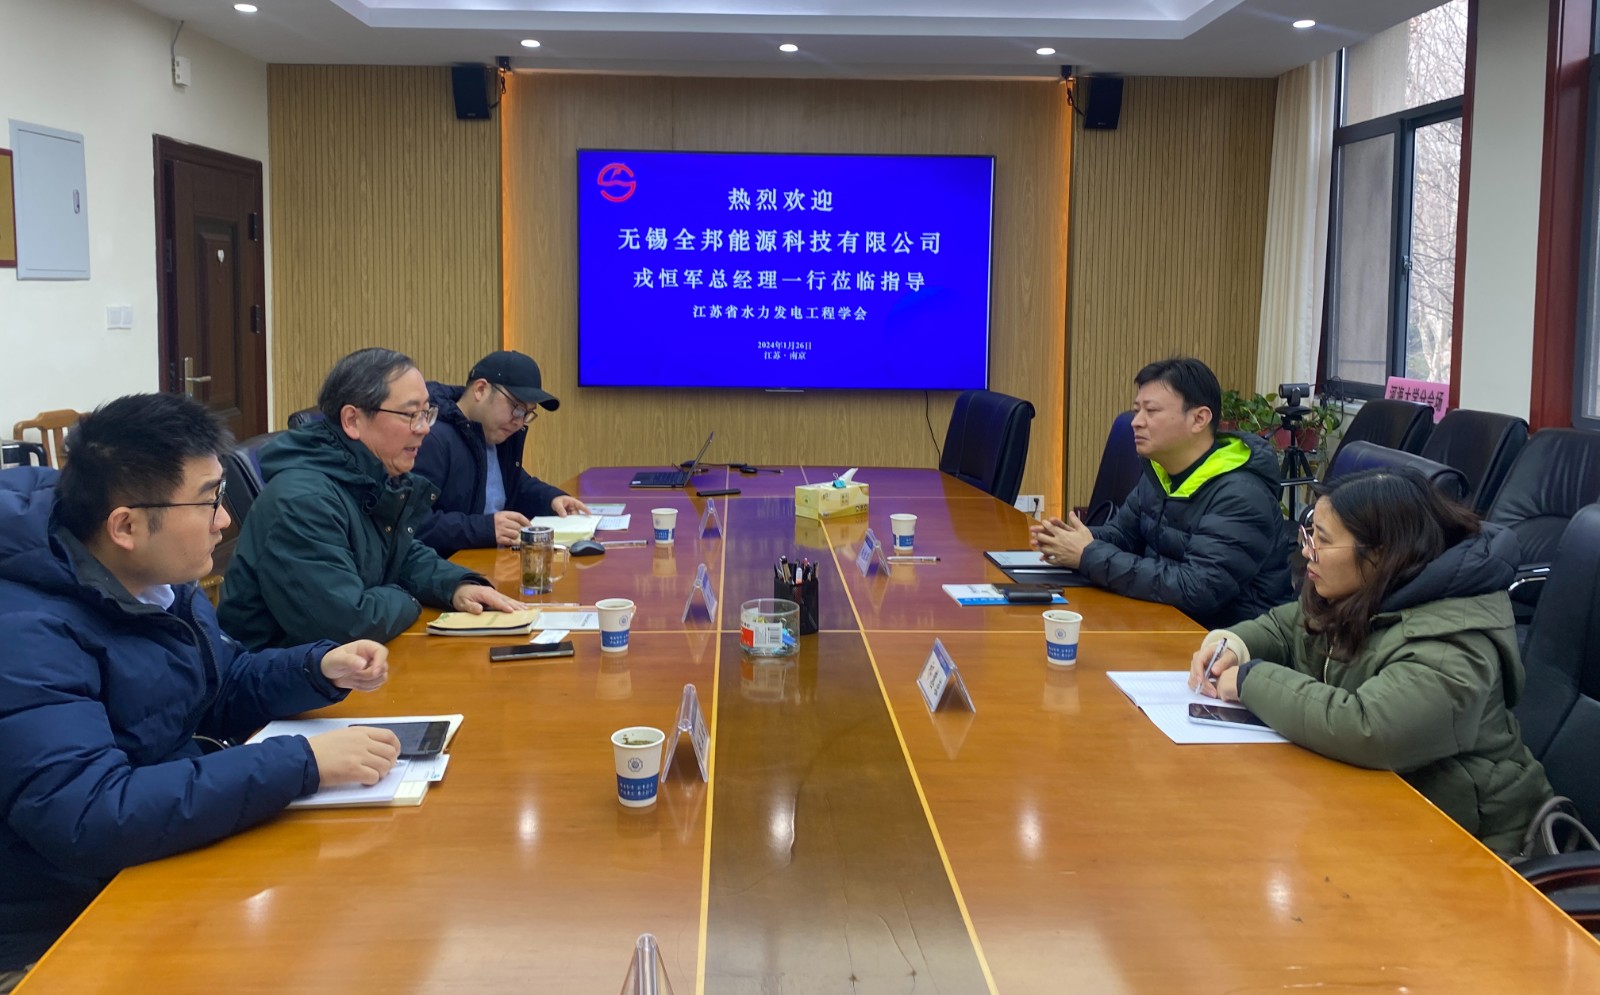 无锡全邦能源科技有限公司到访江苏省水力发电工程学会